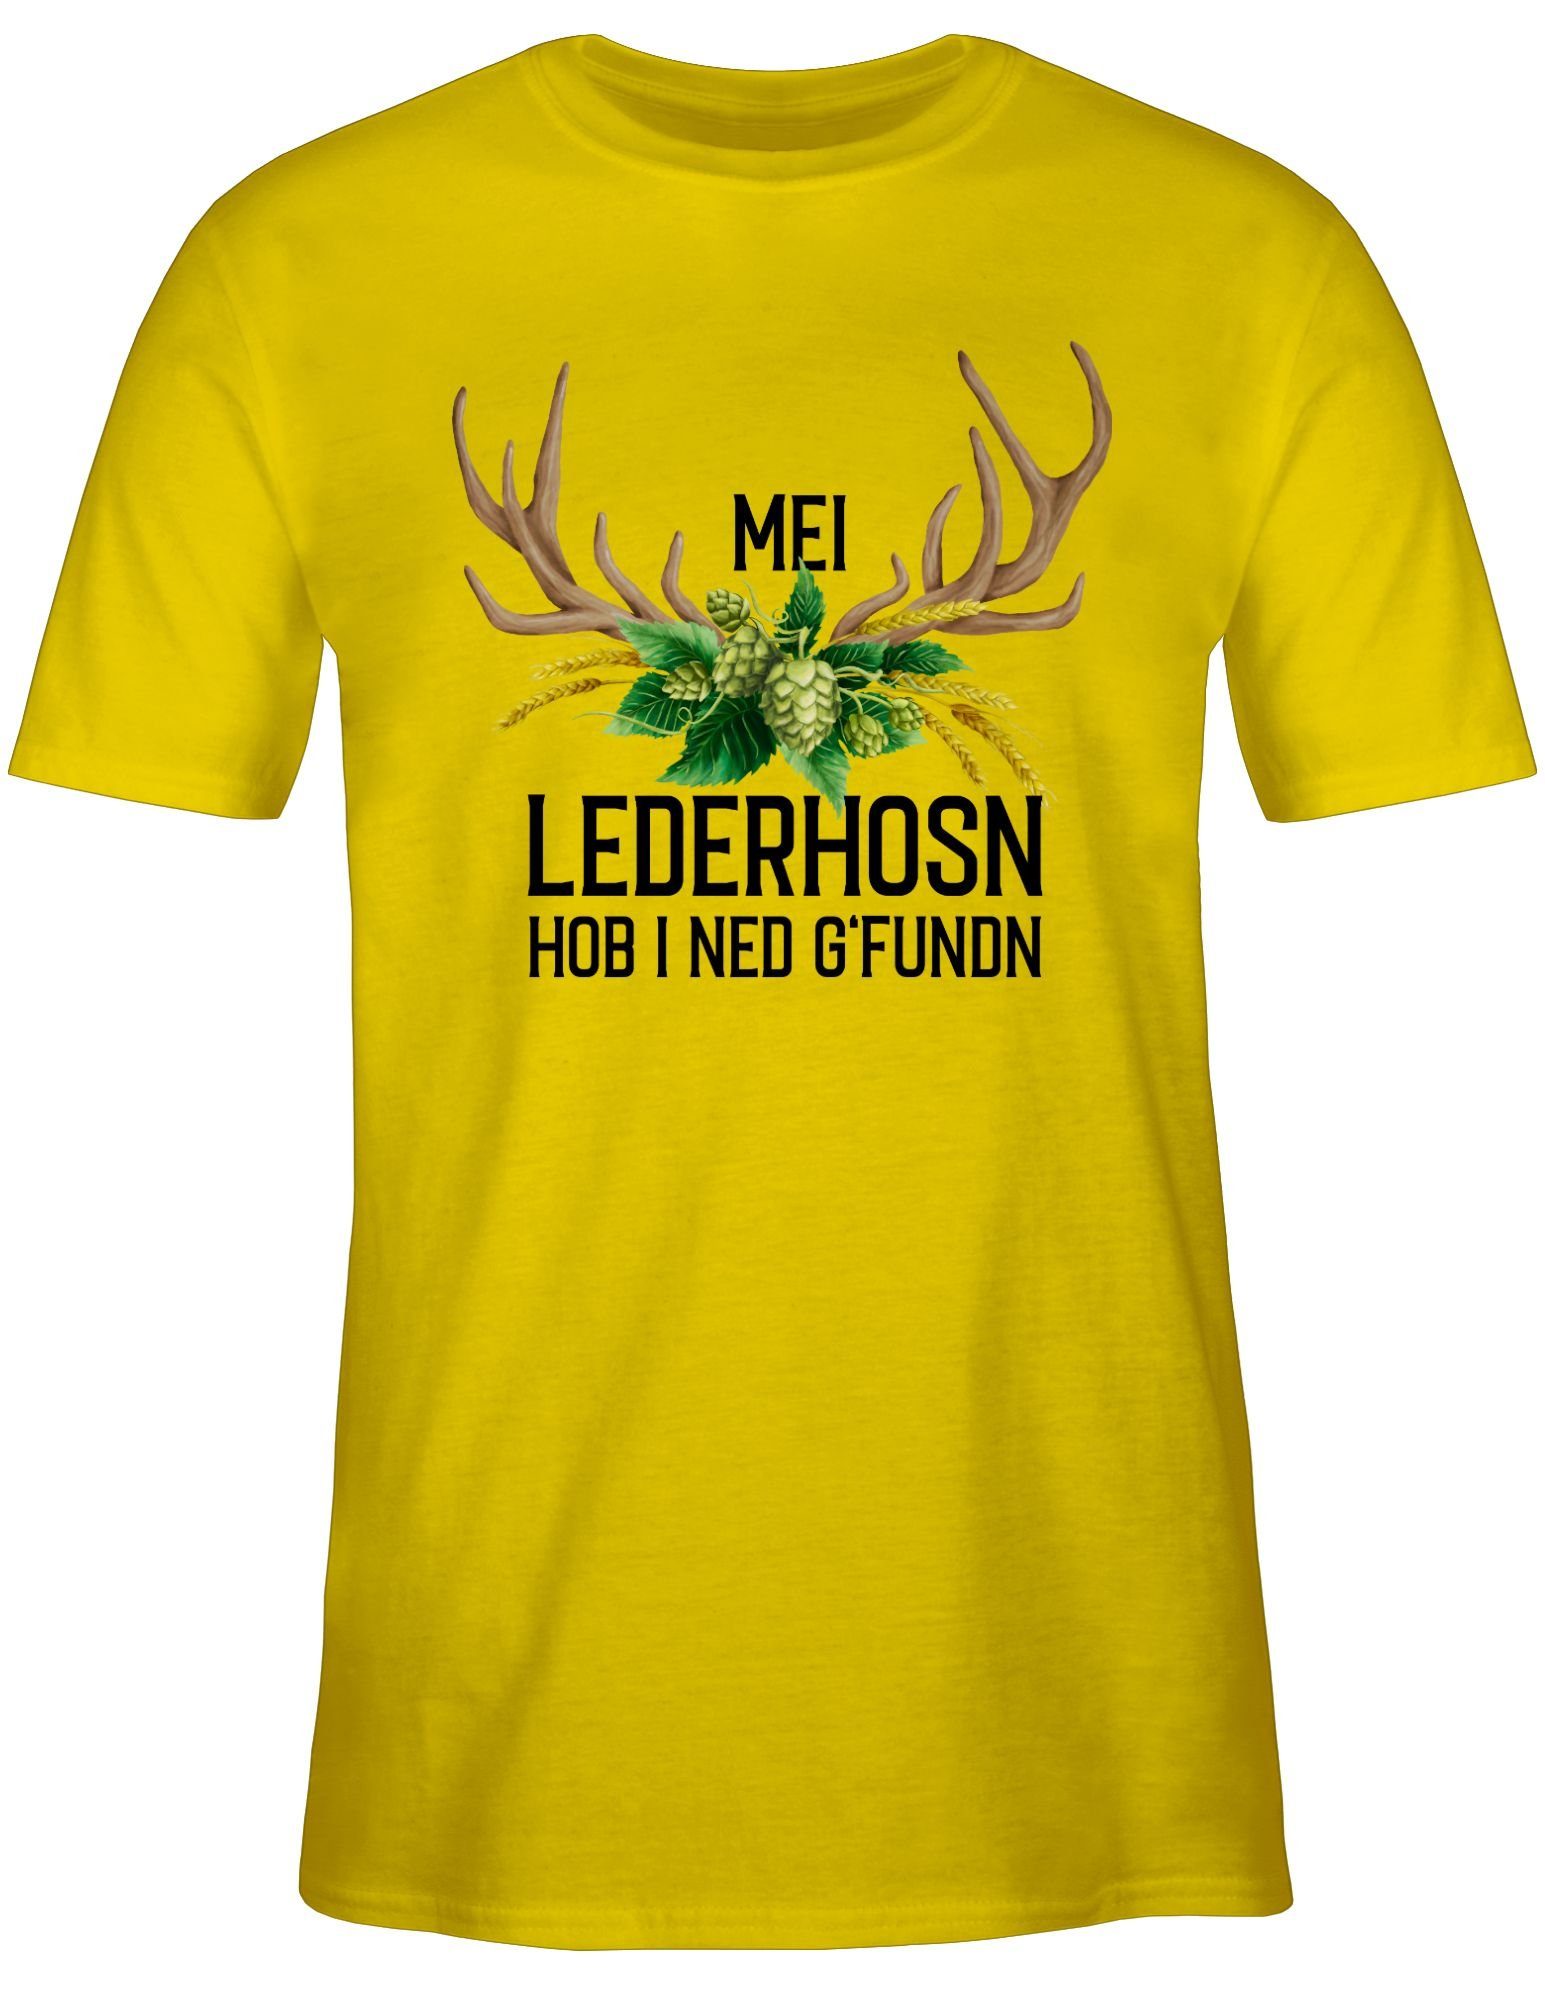 Herren für und i Gelb Hopfen ned Shirtracer Lederhosn 03 T-Shirt Mei Hirschgeweih Oktoberfest hob Weizen - g'fundn Mode